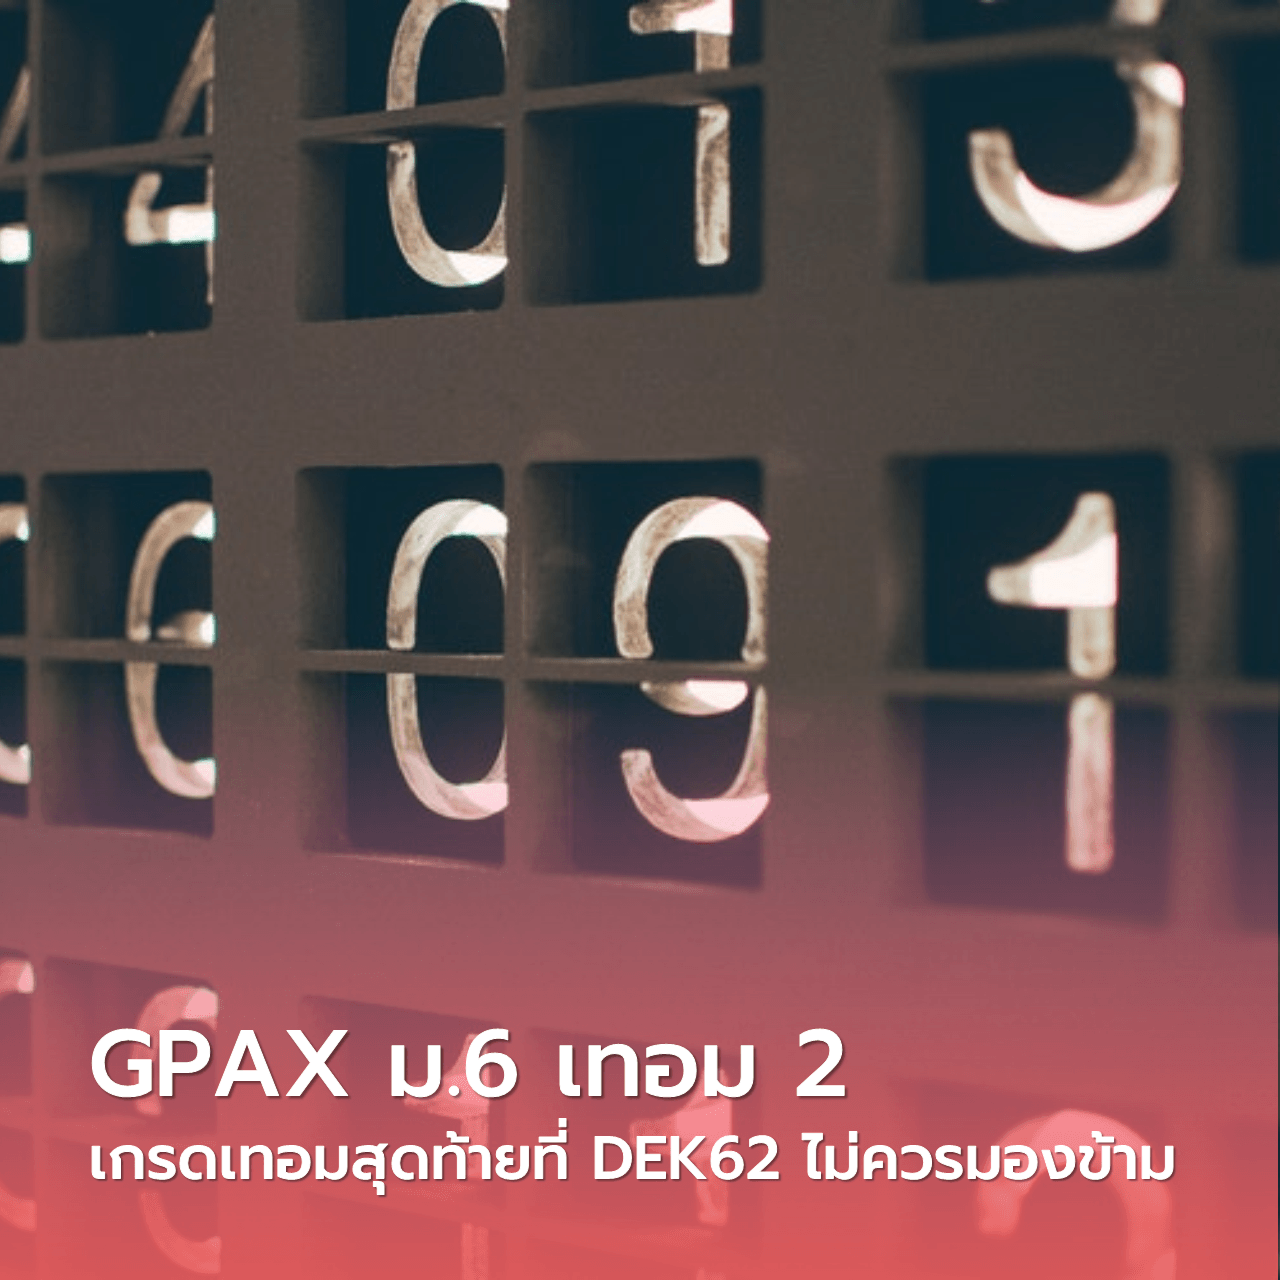  GPAX ม.6 เทอม 2 เกรดเทอมสุดท้ายที่ #DEK62 ไม่ควรมองข้าม